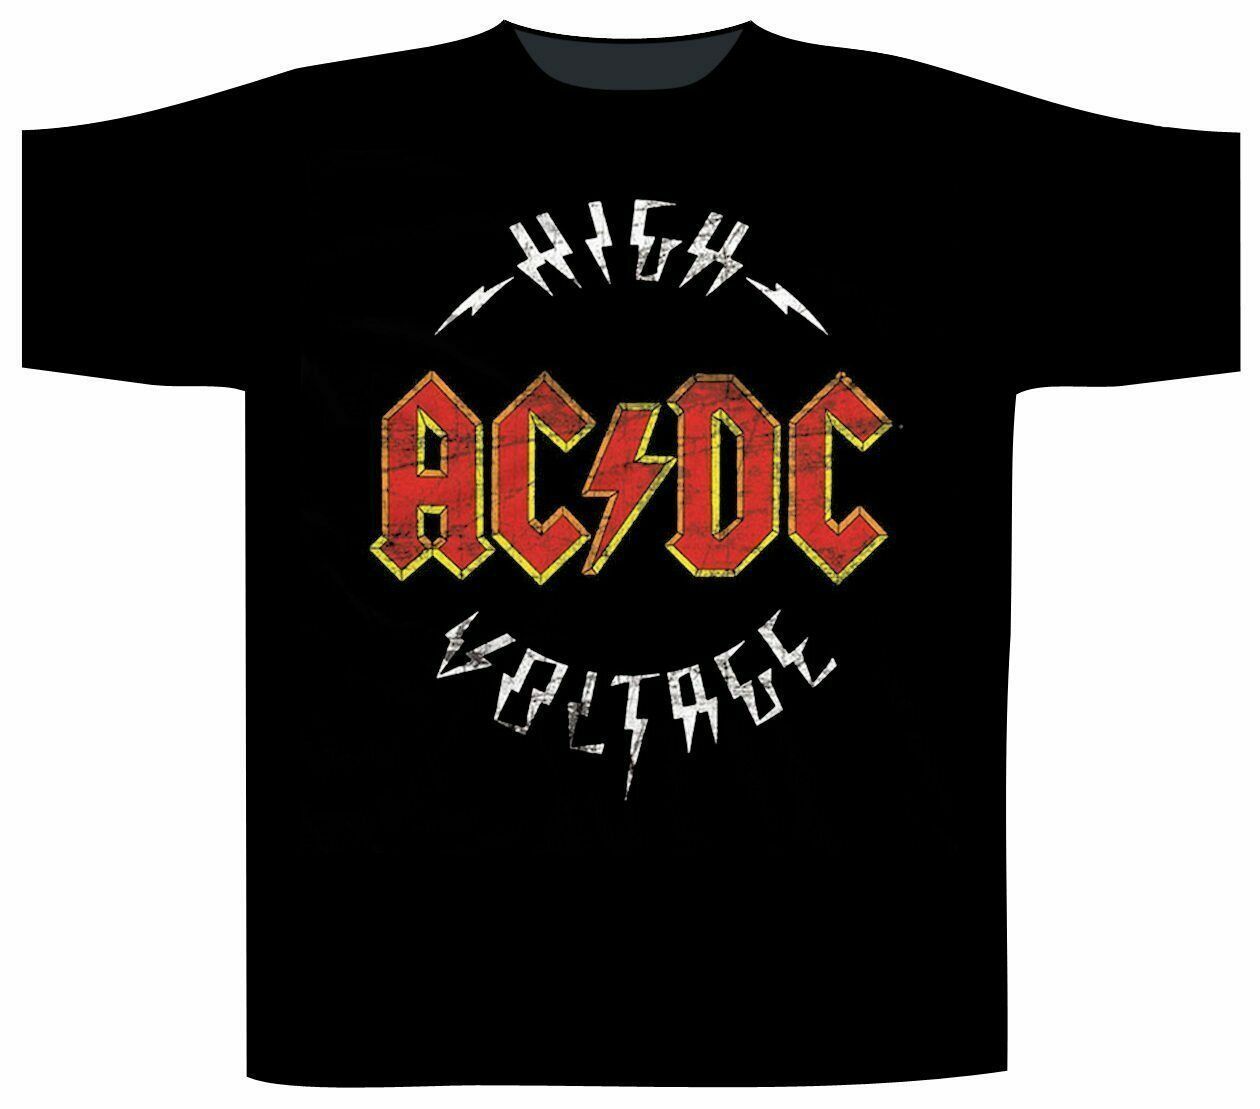 High voltage ac dc. AC/DC "High Voltage". AC DC Хай Вольтаж. AC DC High Voltage 1975. AC DC High Voltage альбом.